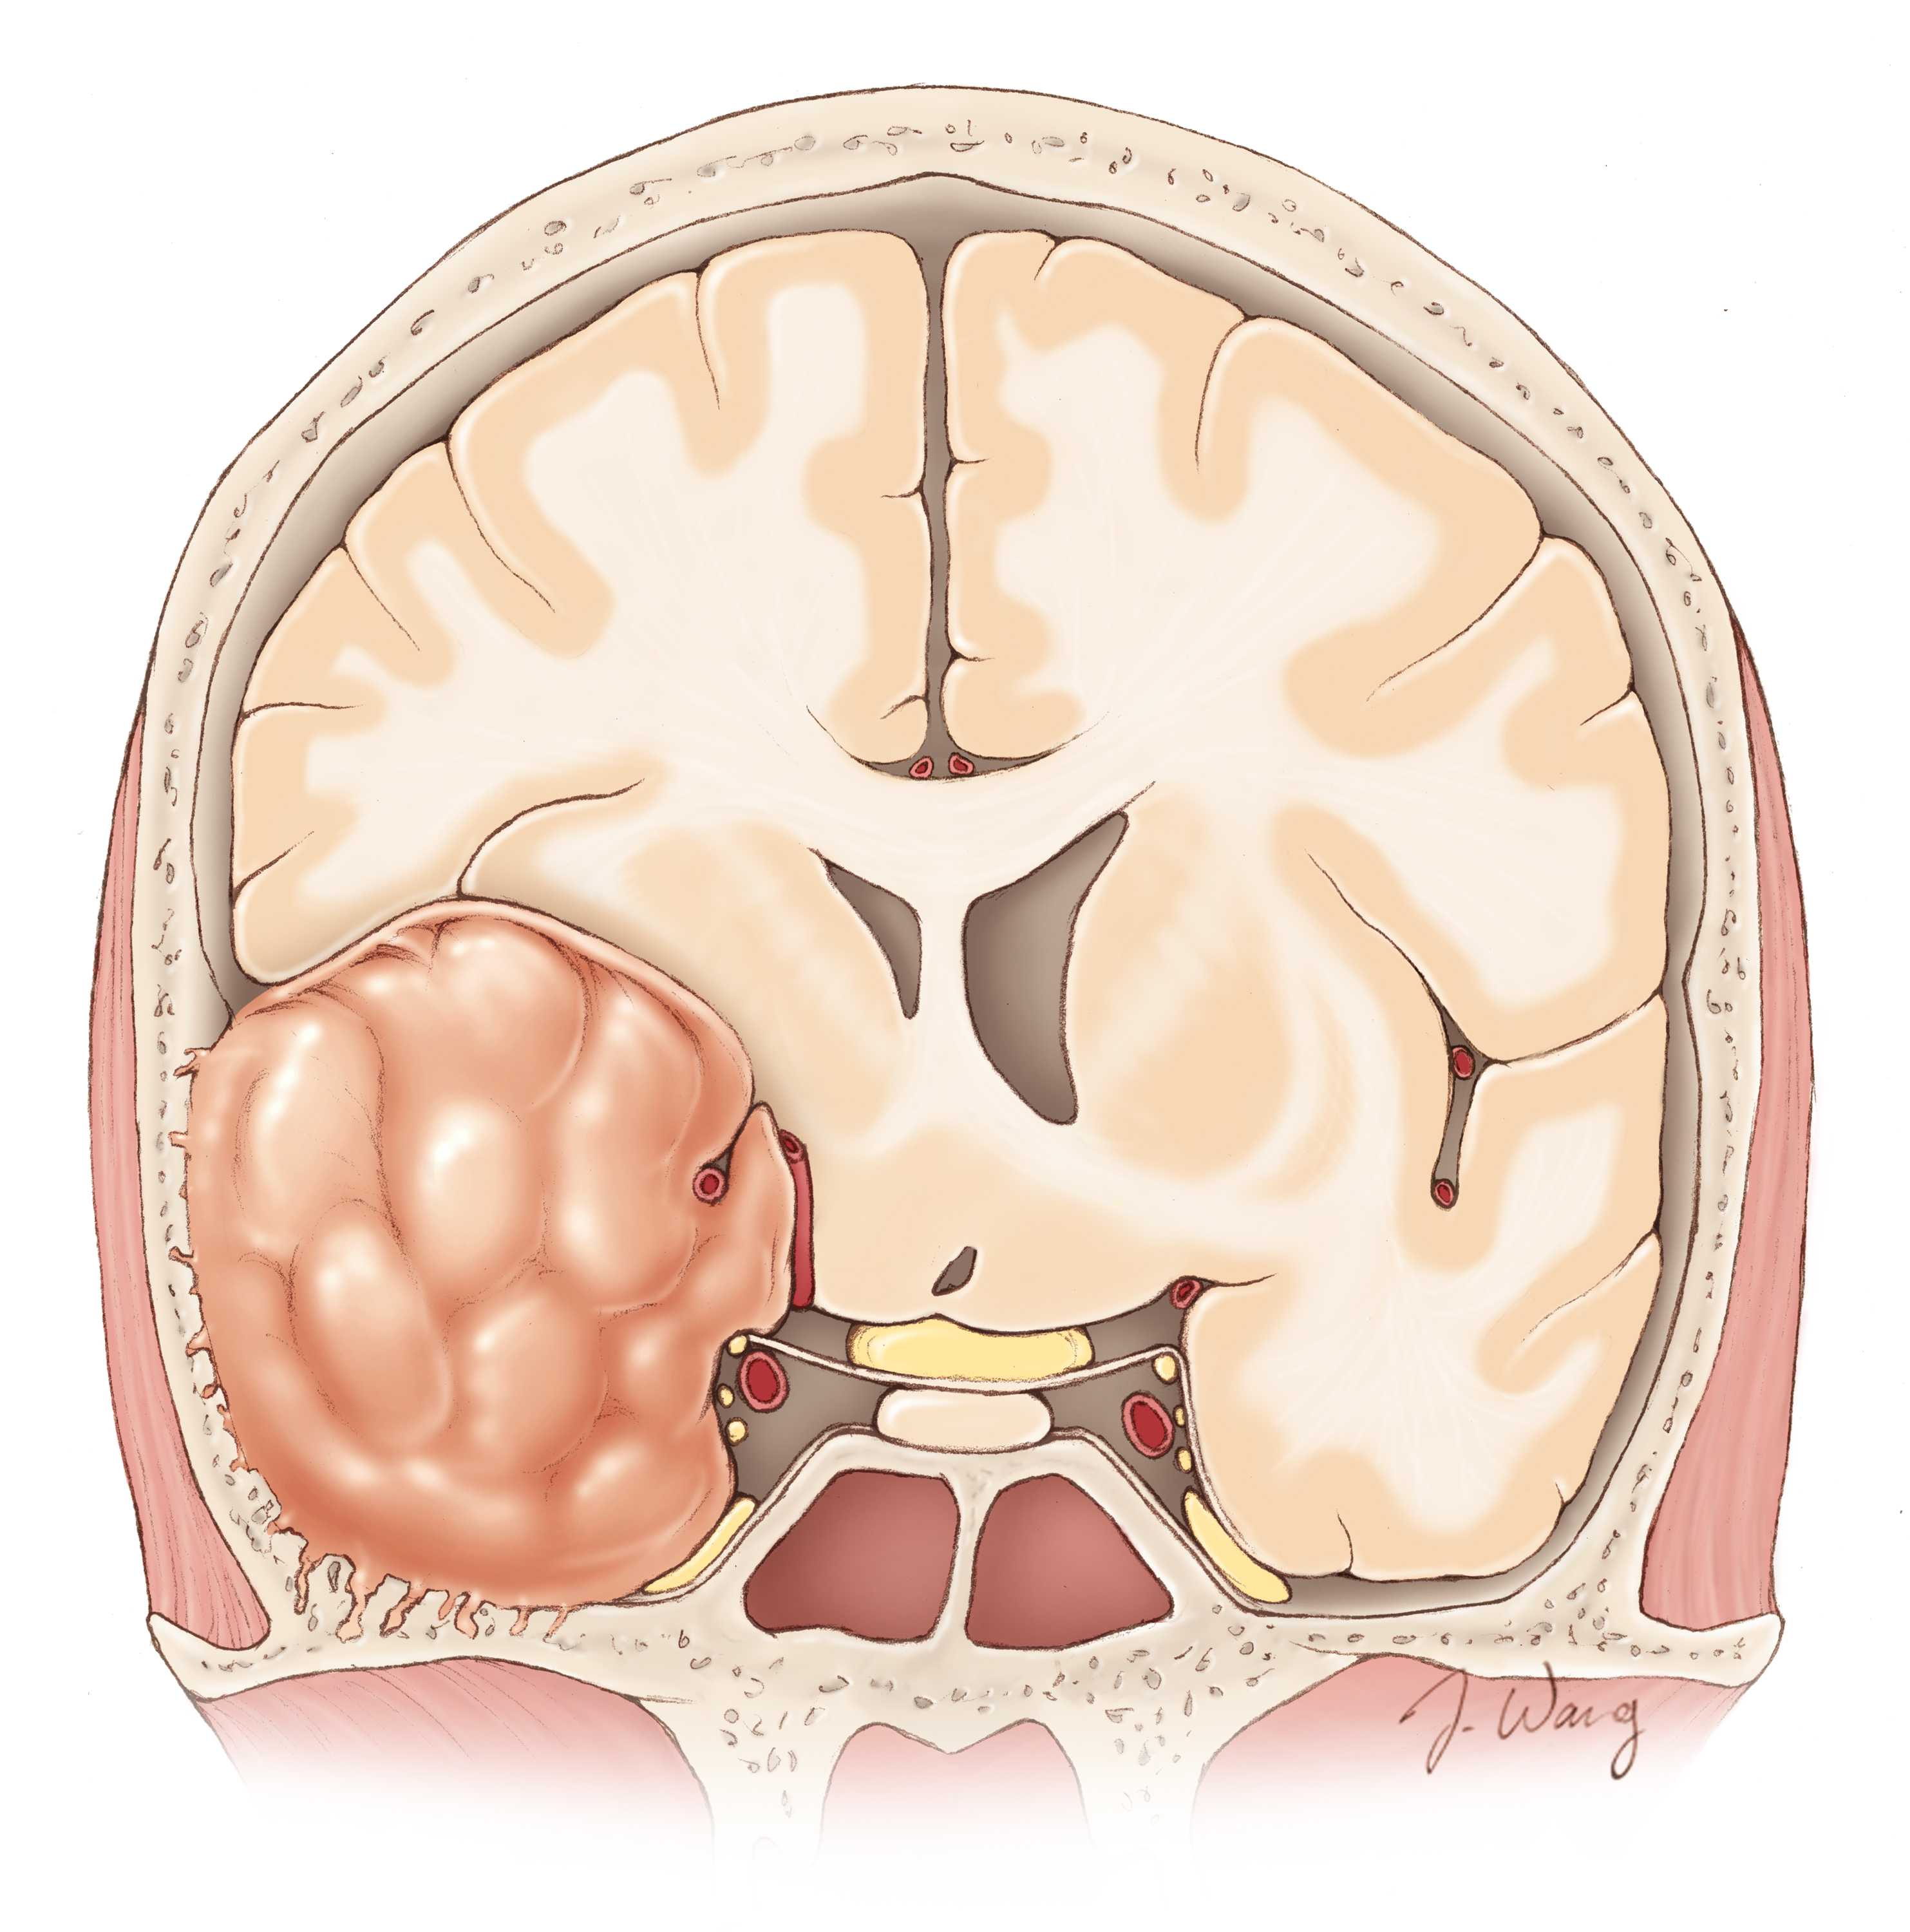 Опухоль головного мозга это. Менингиома доброкачественная. Менингиома кости черепа. Опухоли мозга (менингиома);. Атипическая менингиома.